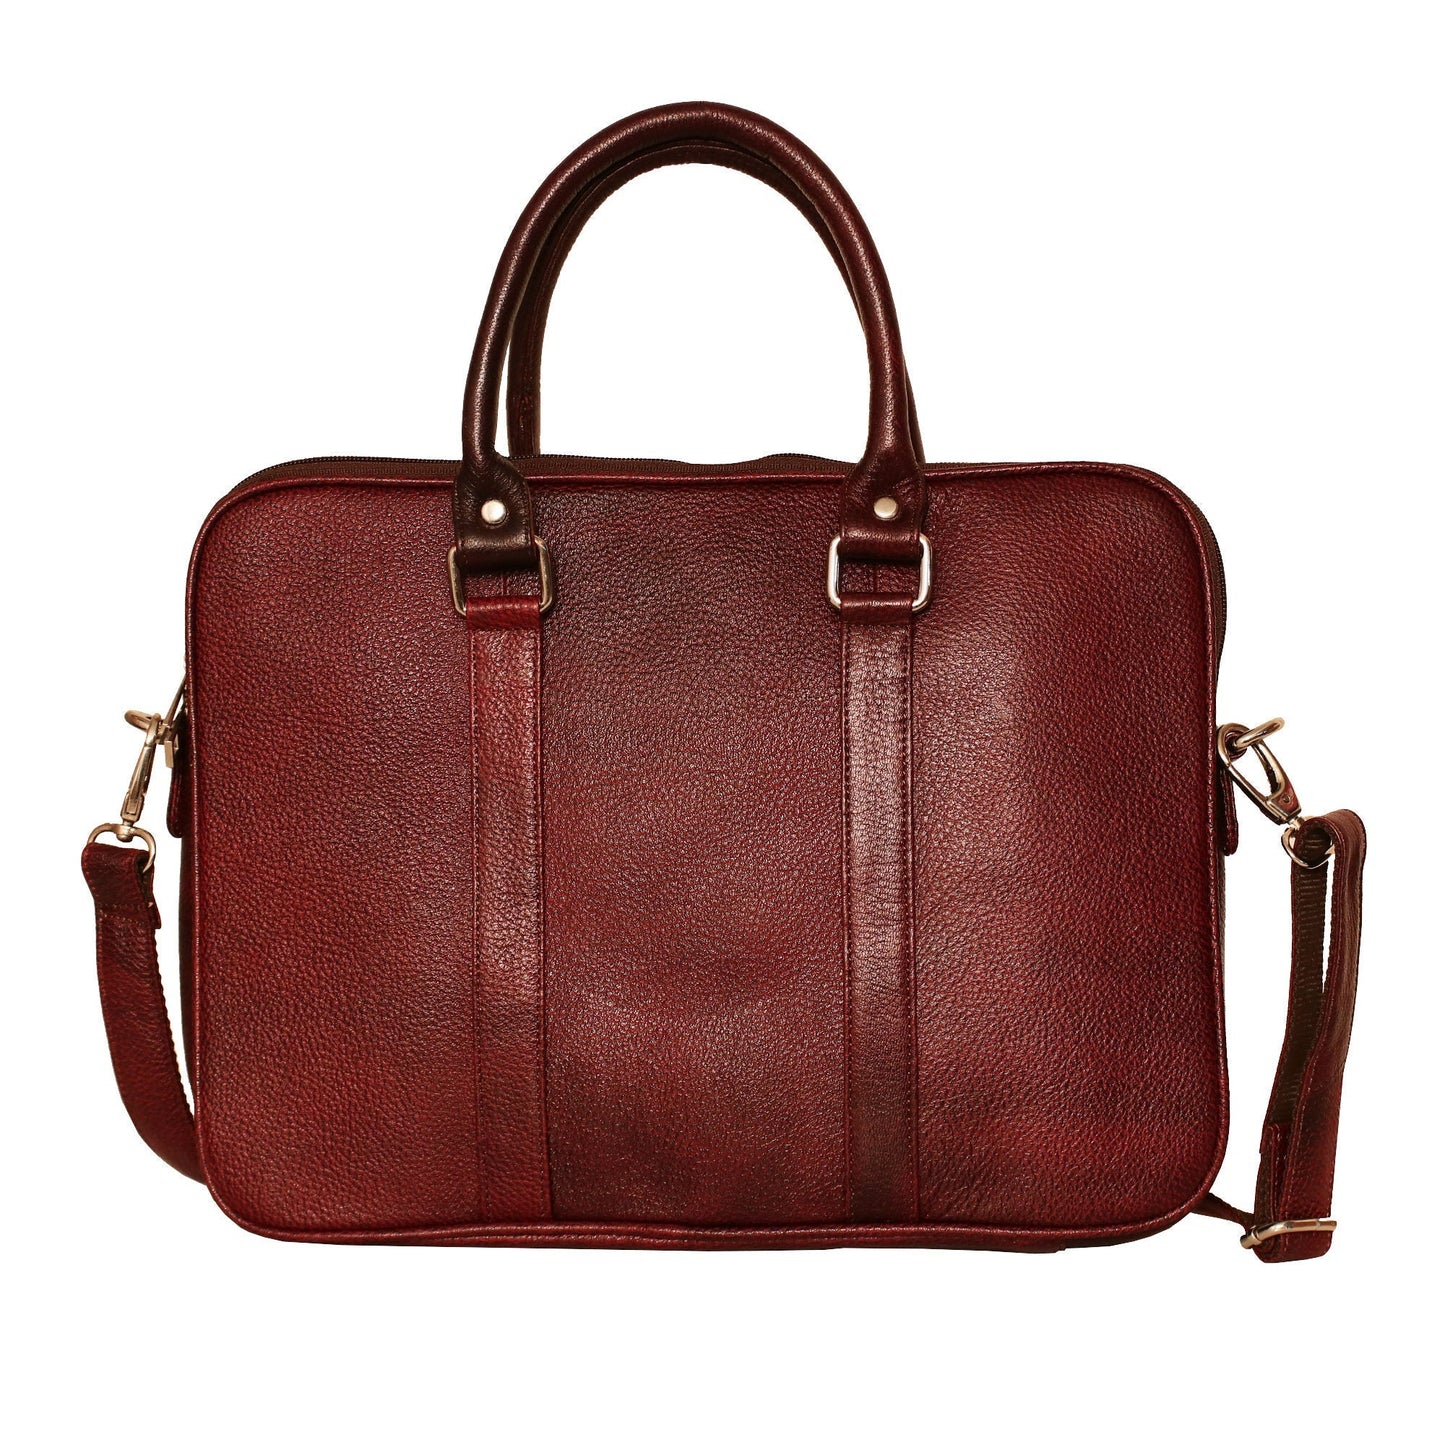 LINDSEY STREET Leather MacBook Bag, 14 Inch Laptop Bag without Sleeves, Leather Messenger Bag, Office Bag, Men's Shoulder Bag